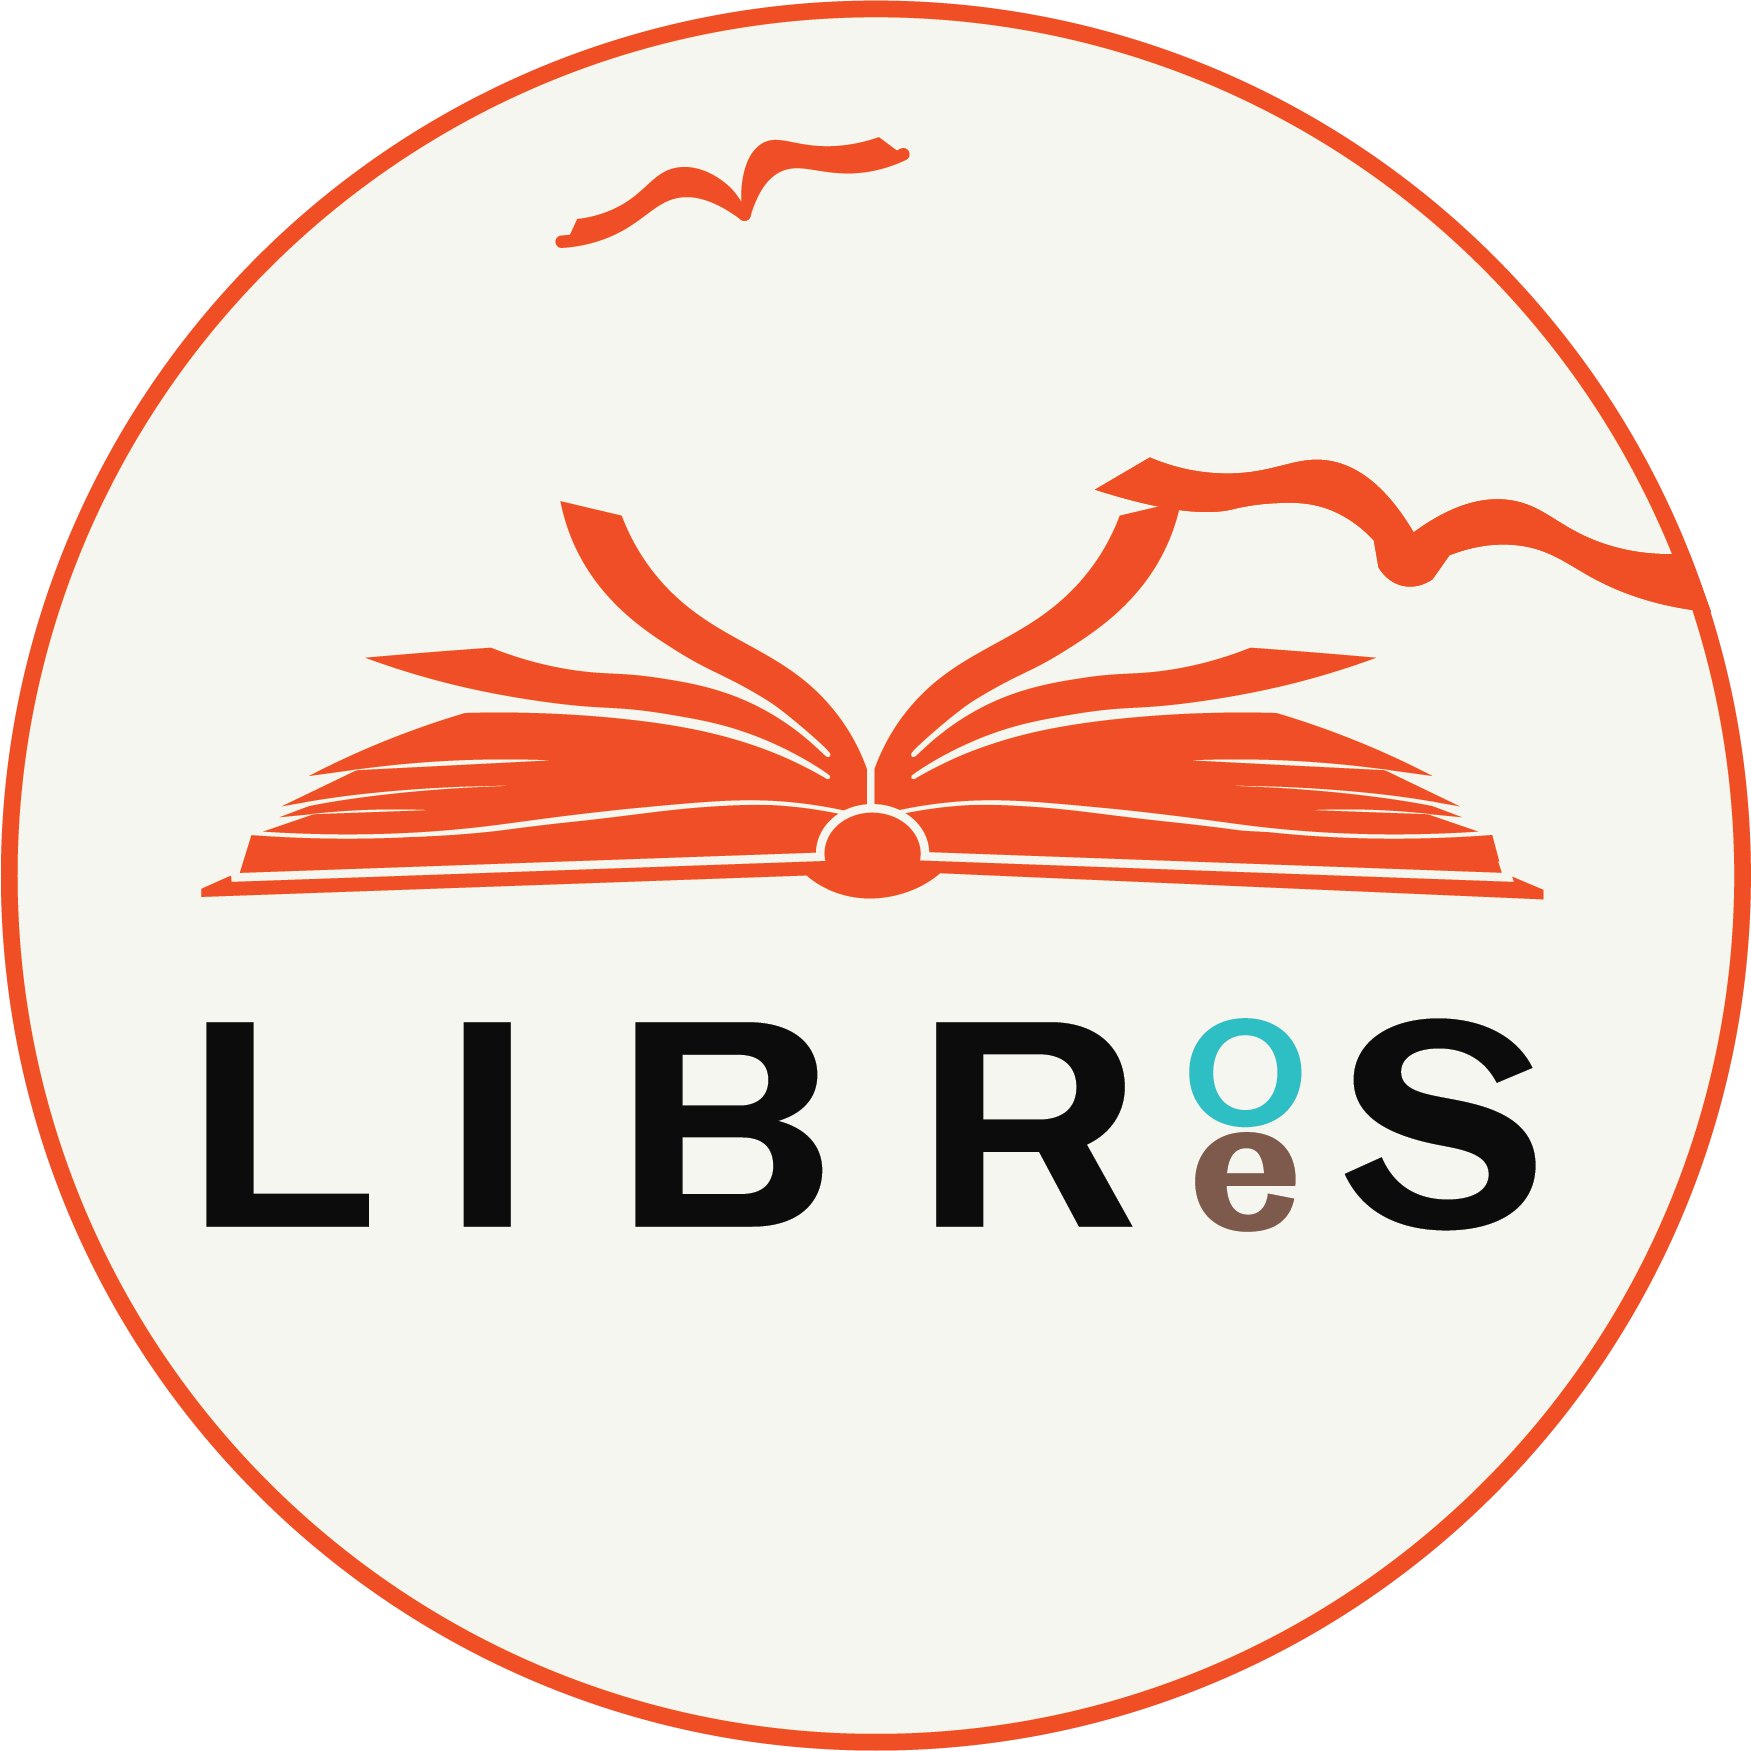 Logo Libros Libres